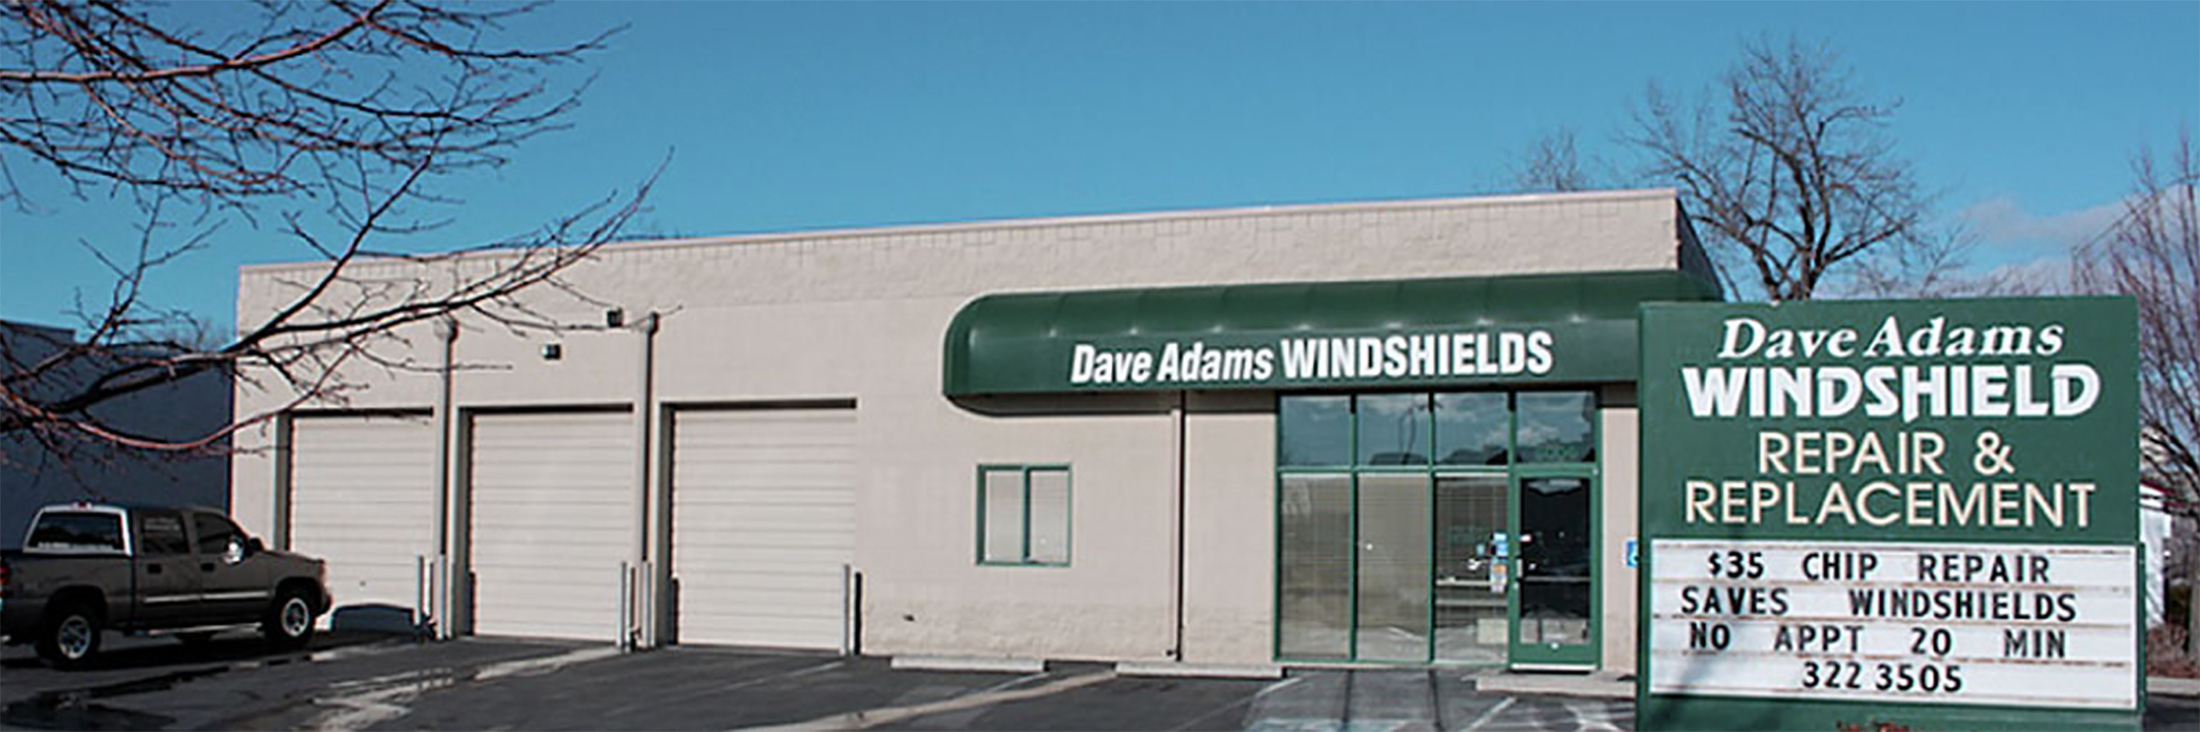 Dave Adams Windshield Repair- Boise Idaho